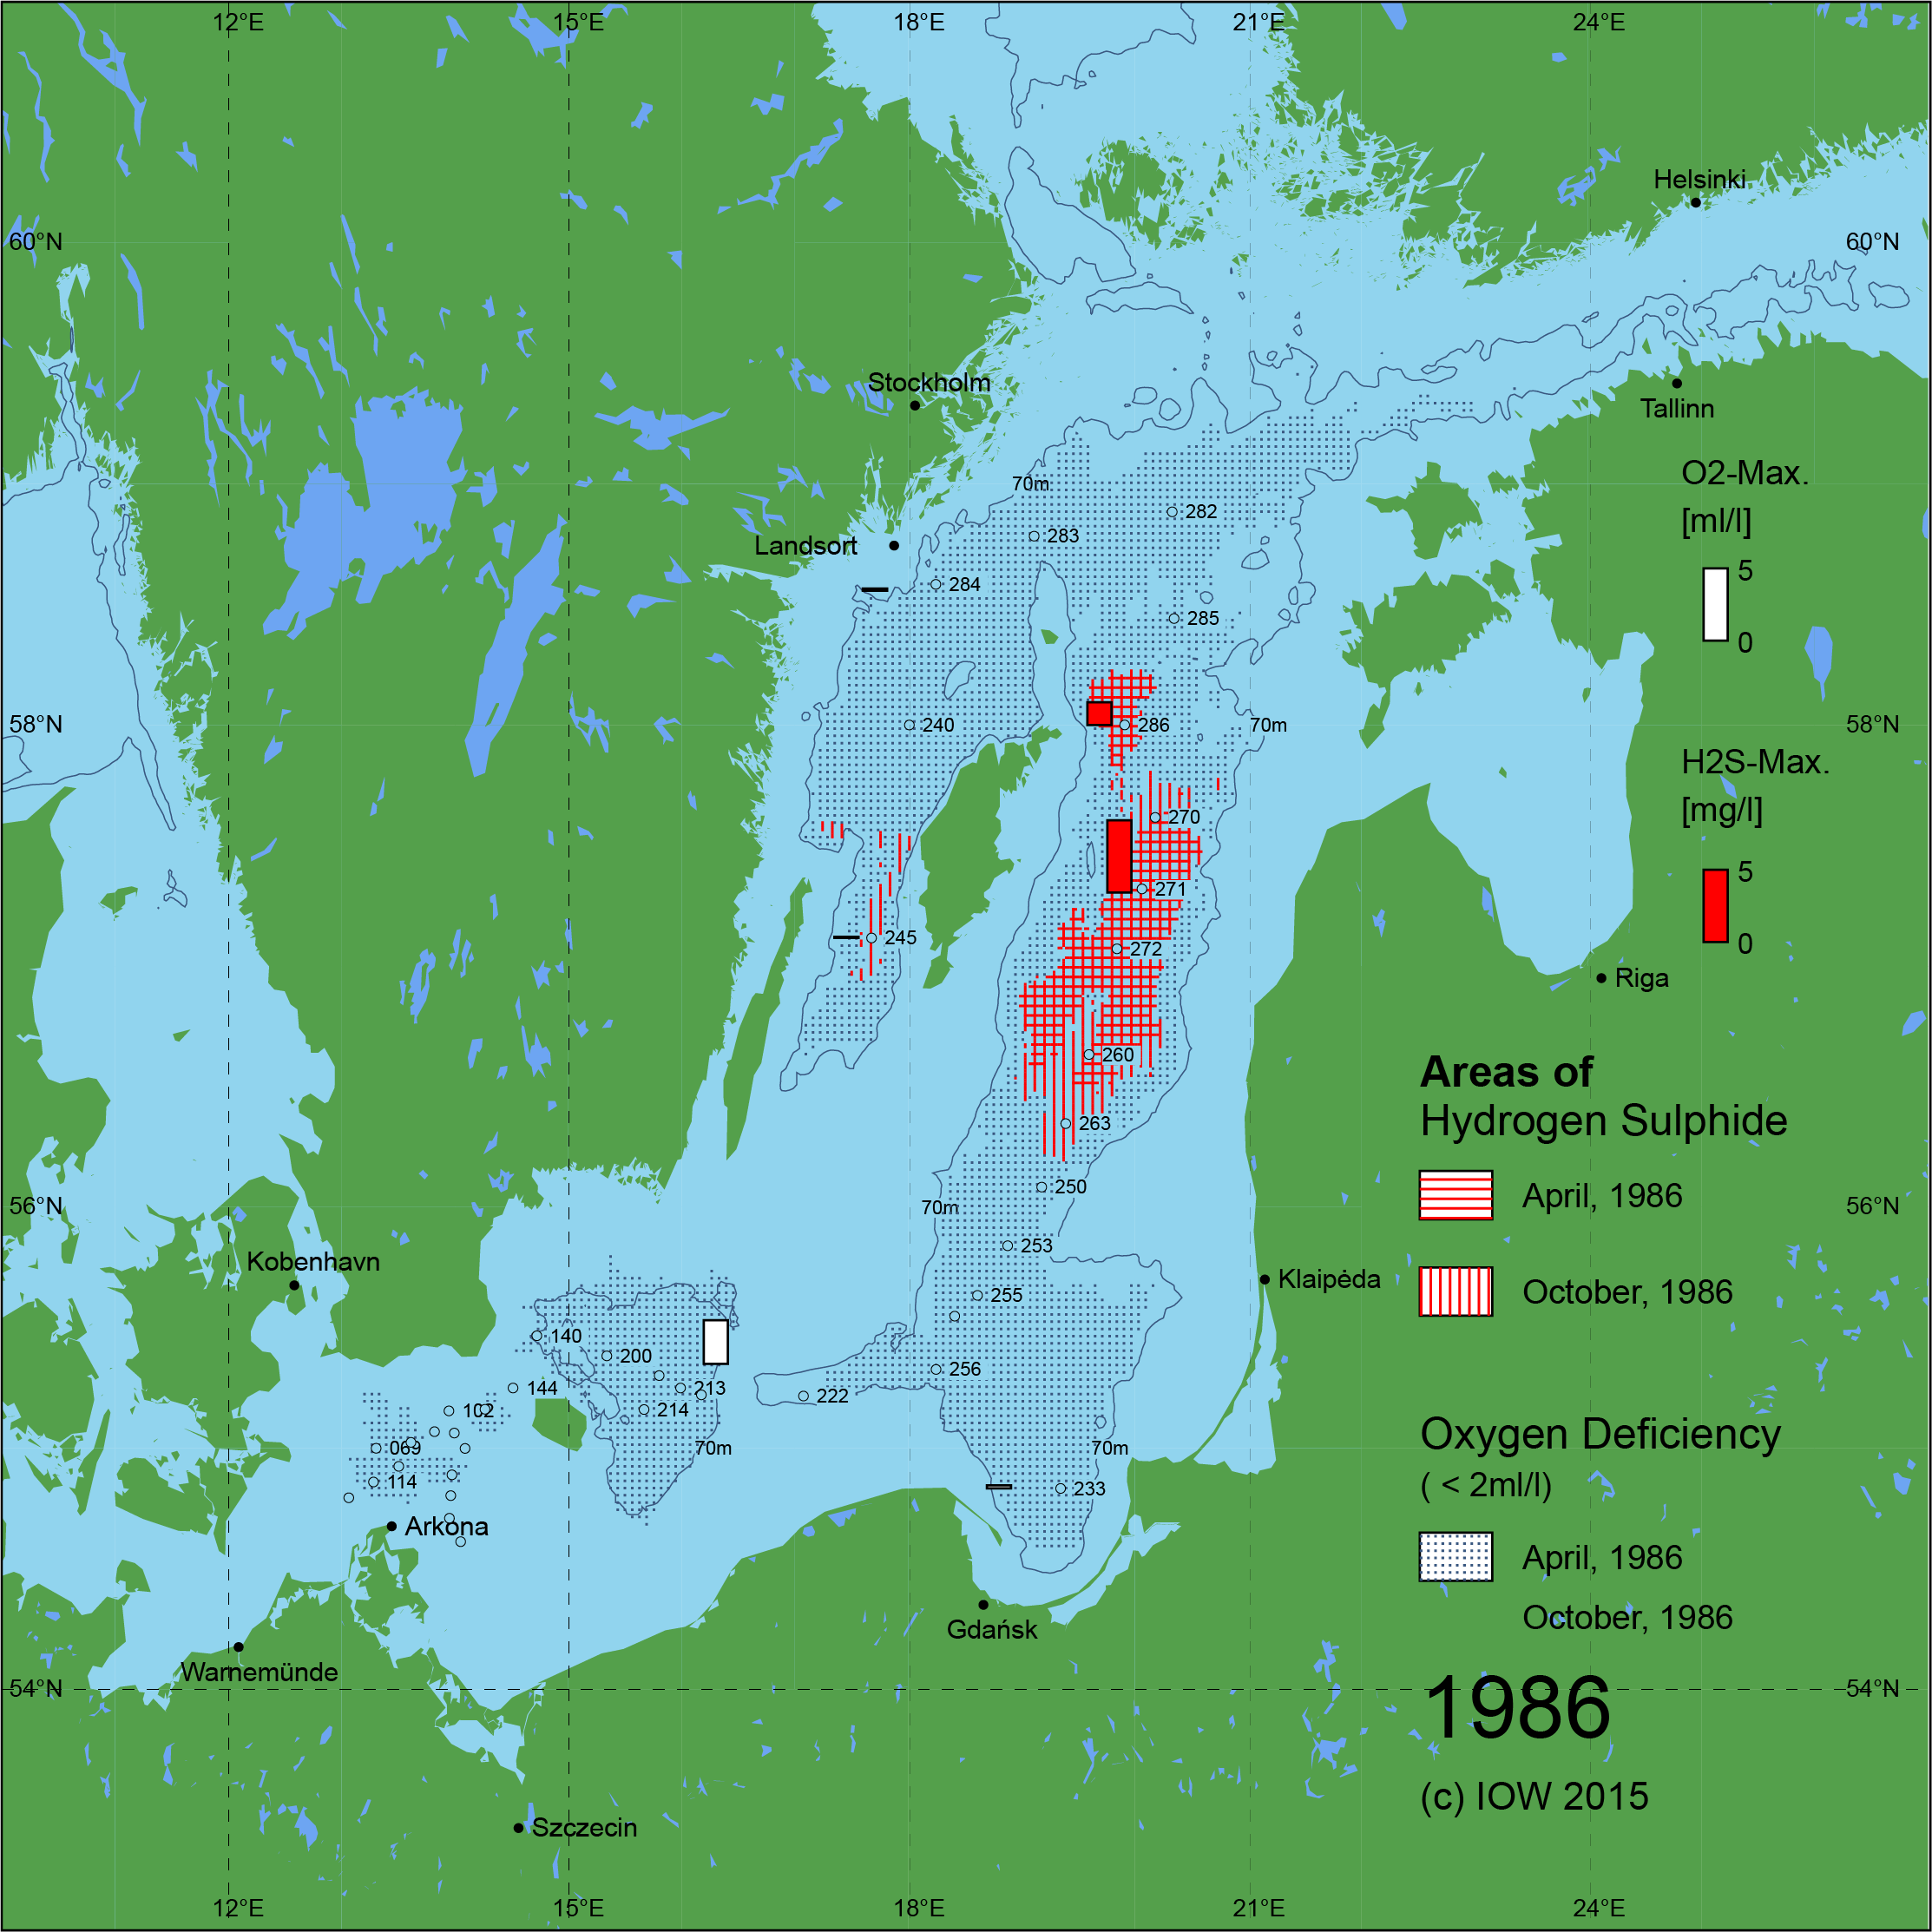 Sauerstoffarme und sauerstofffreie Gebiete in der Ostsee - 1986